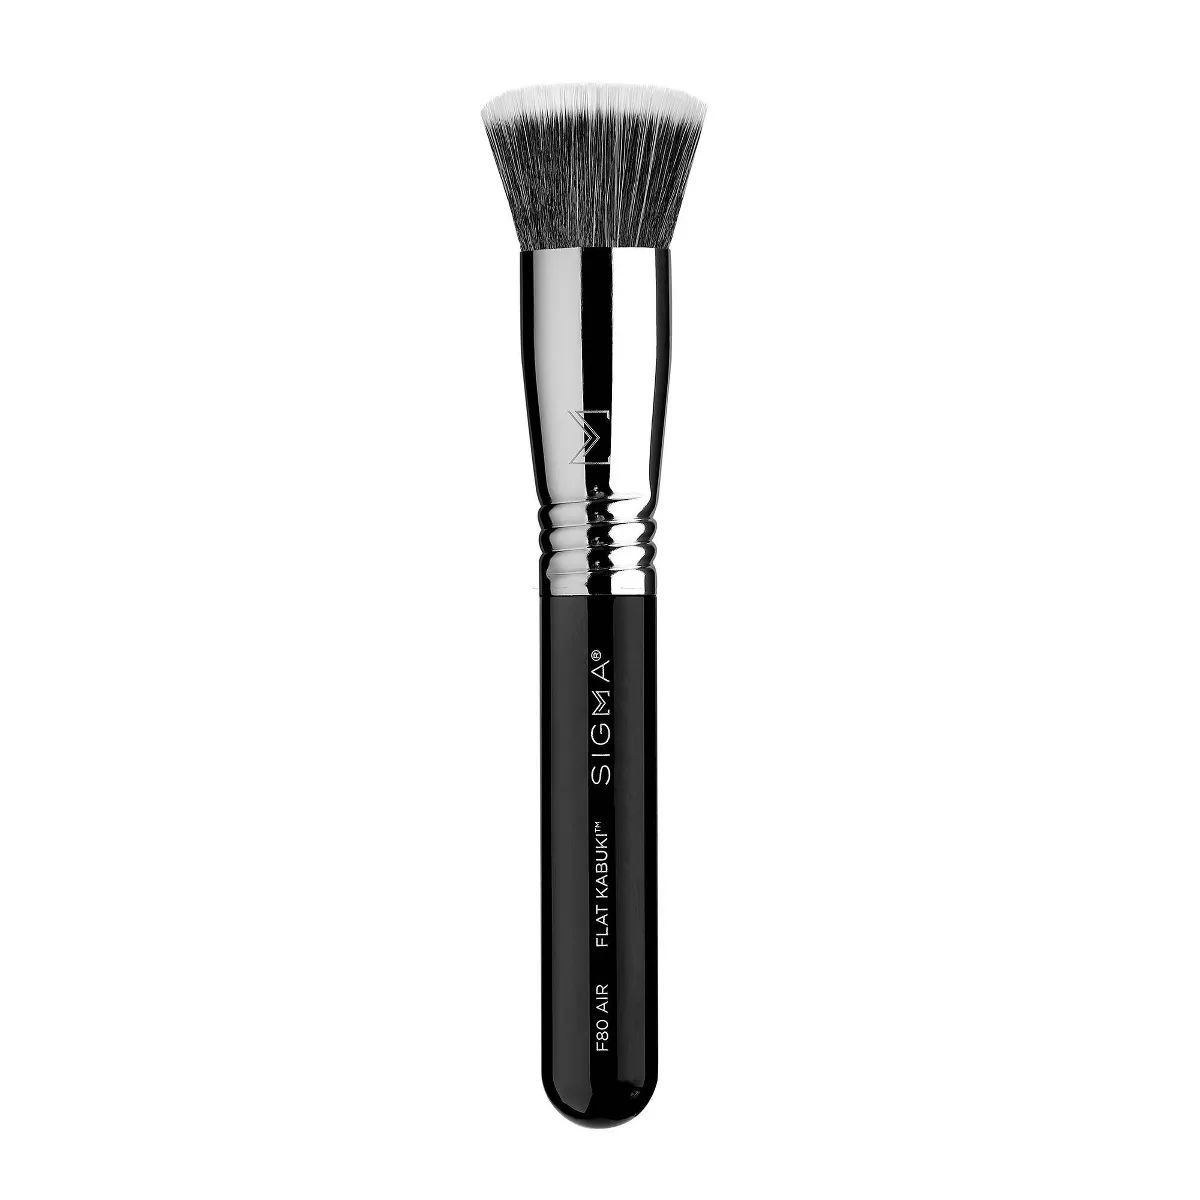 Sigma Beauty F80 Air Flat Kabuki Makeup Brush | Target